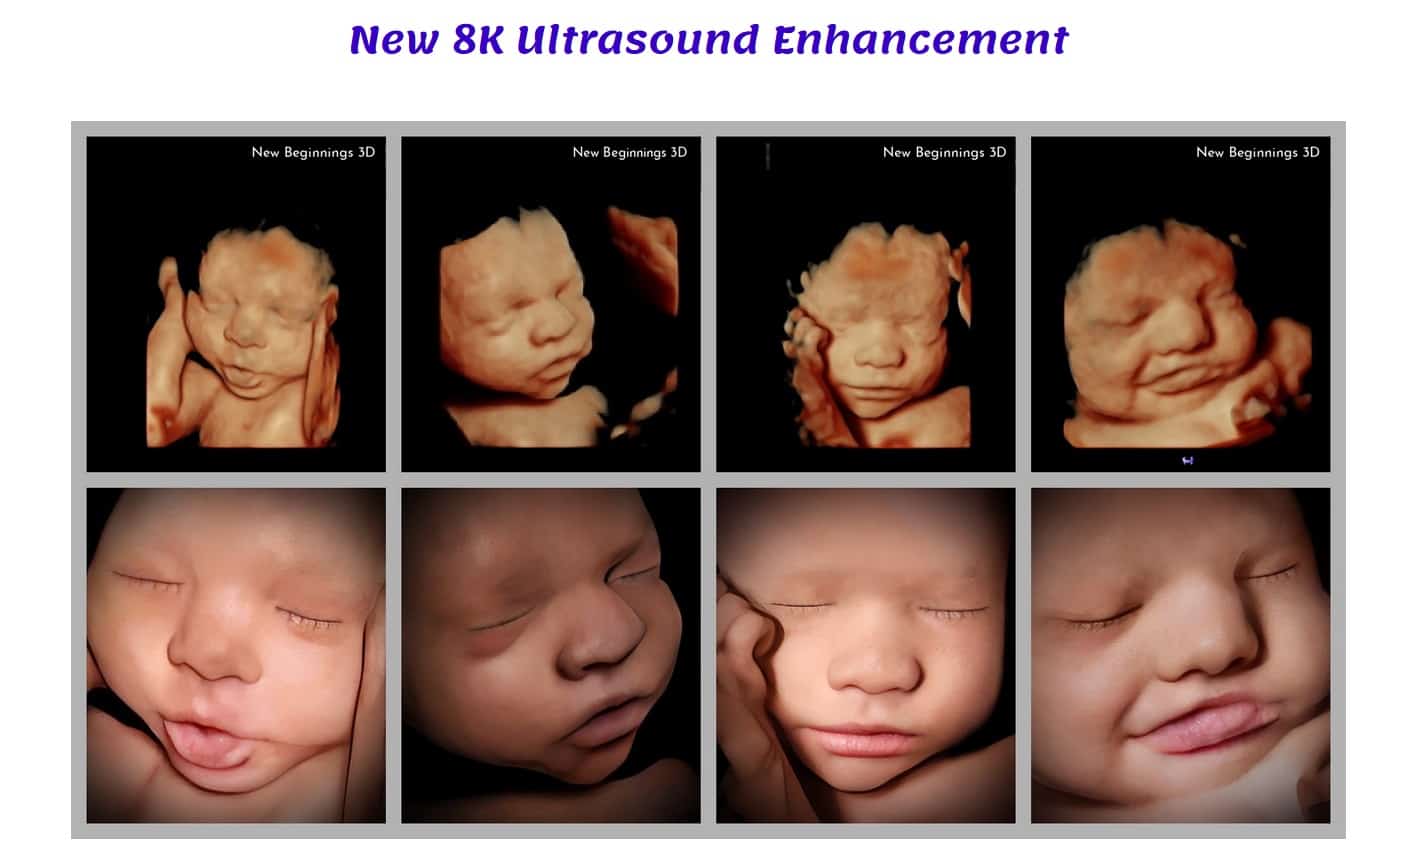 modern ultrasounds prove unborn children 01